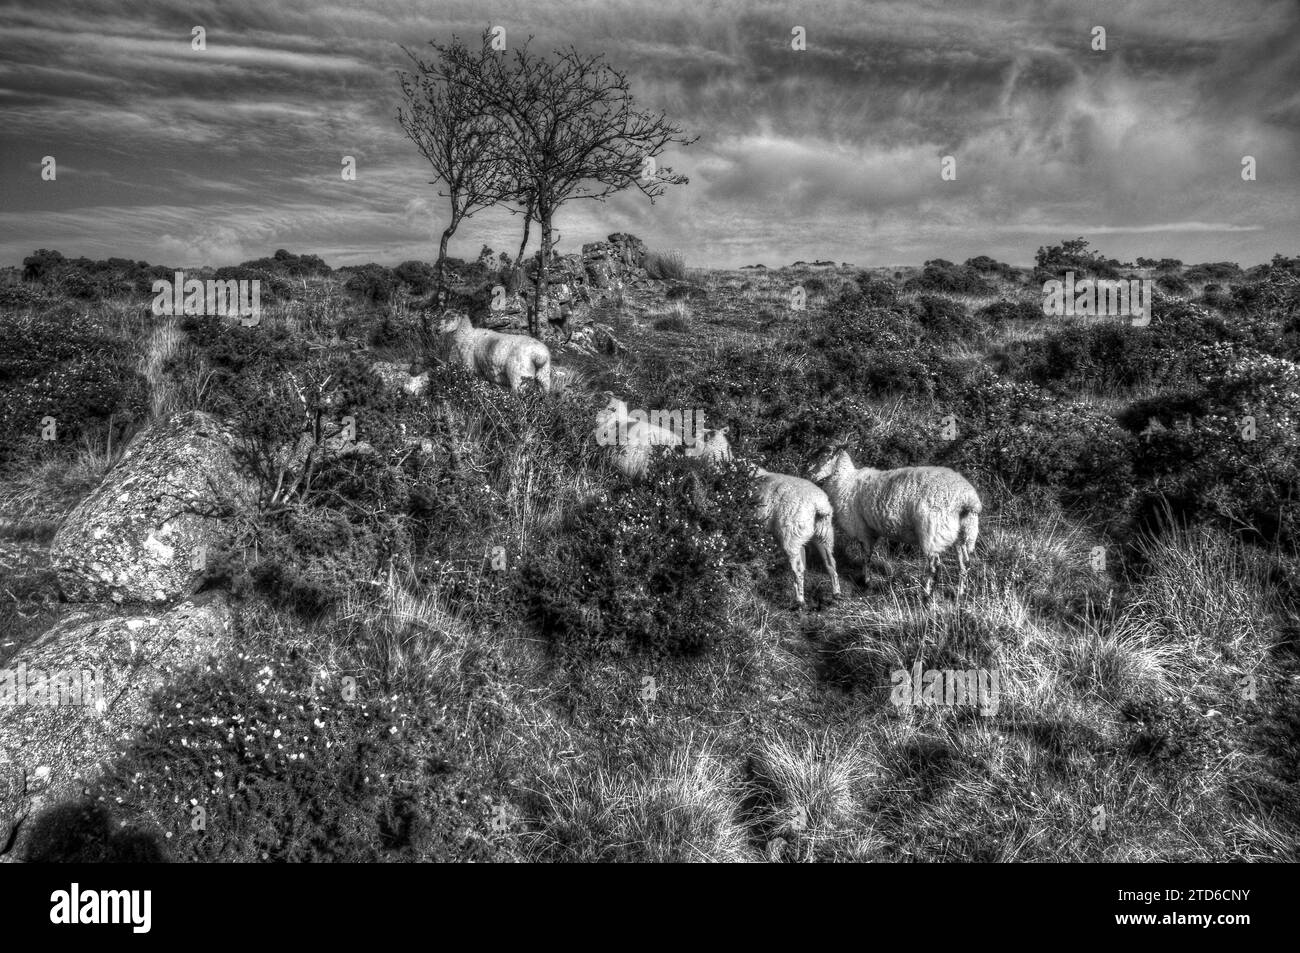 Quattro pecore su Wistman's Wood, Dartmoor, Devon. REGNO UNITO. Fotografia in bianco e nero. Foto Stock